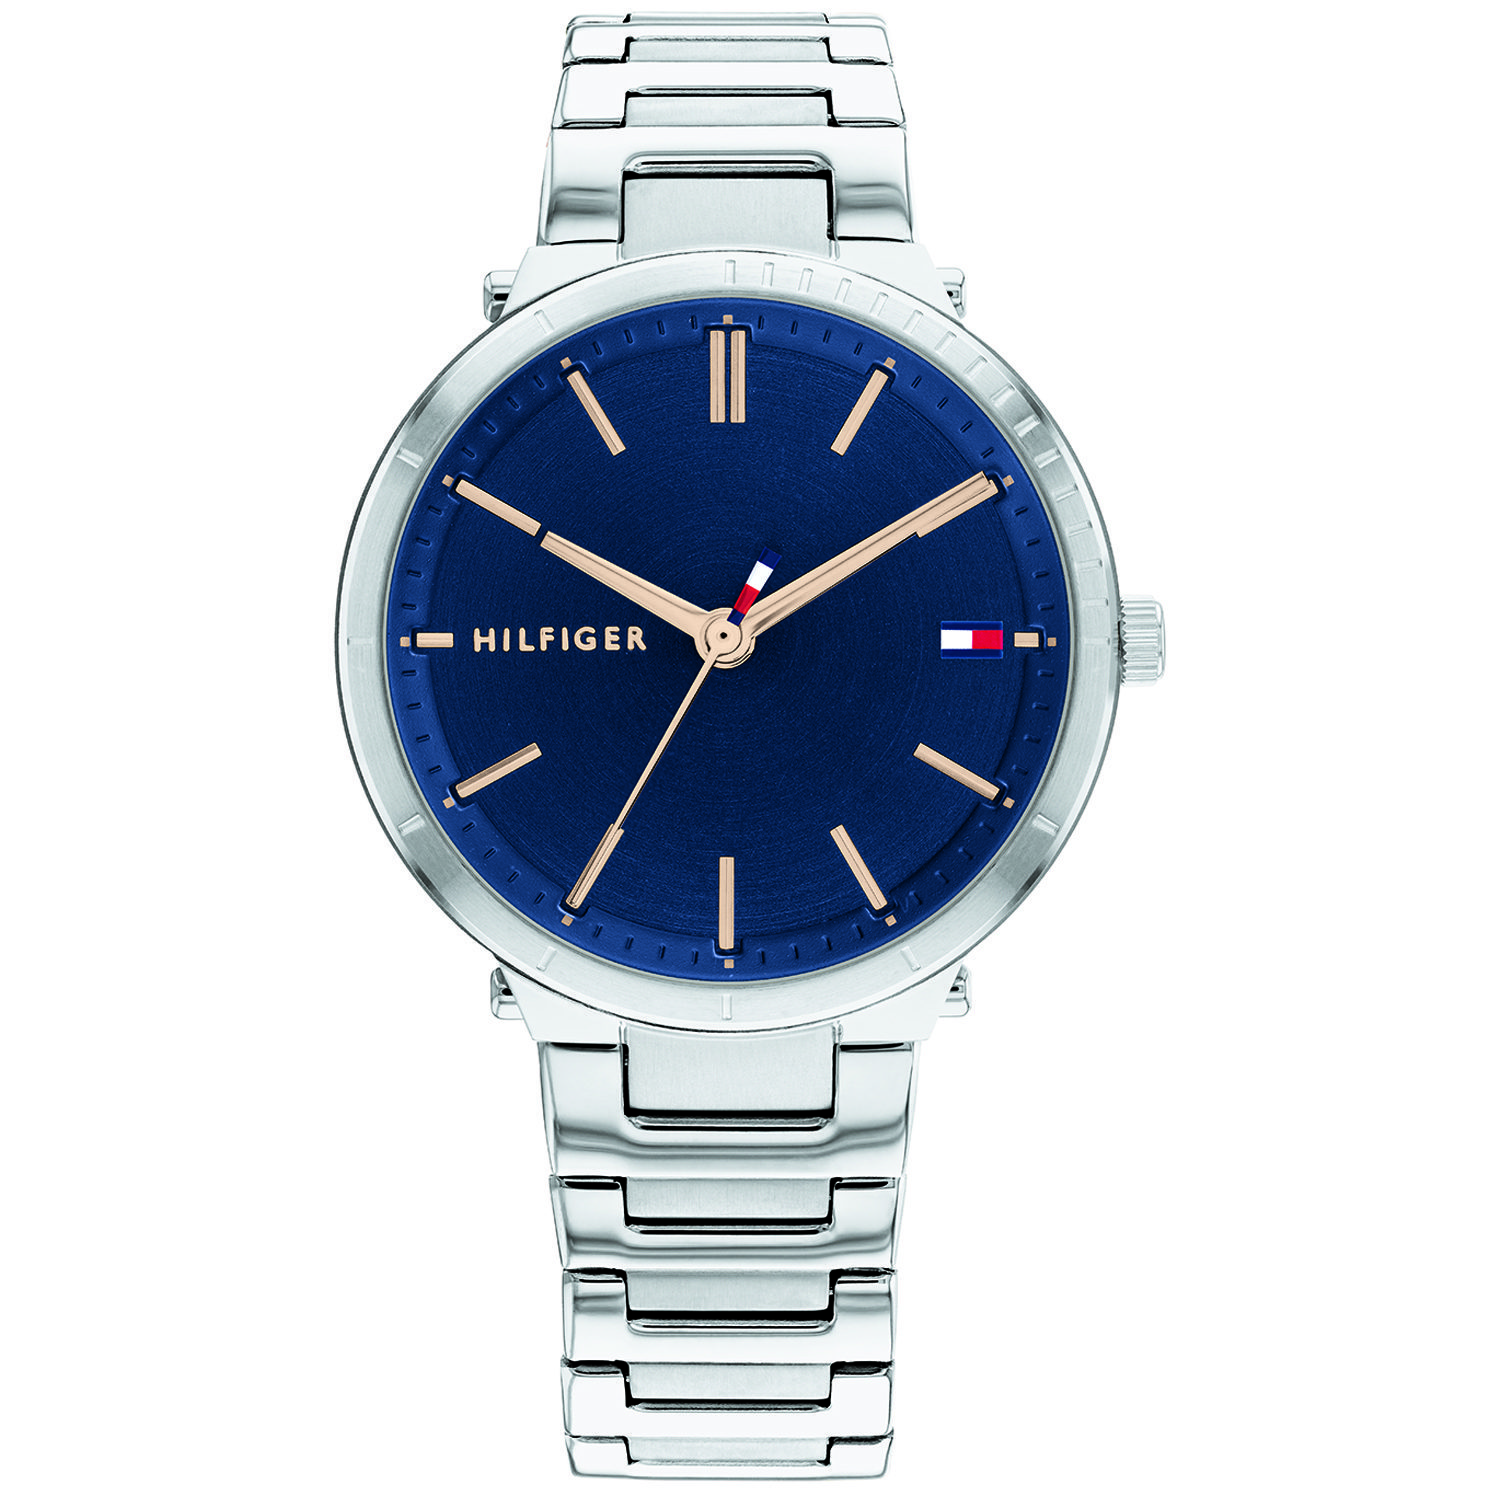 Tommy Hilfiger dames horloge 1782405 - zilver - blauw – 3ATM – elegante steel armband